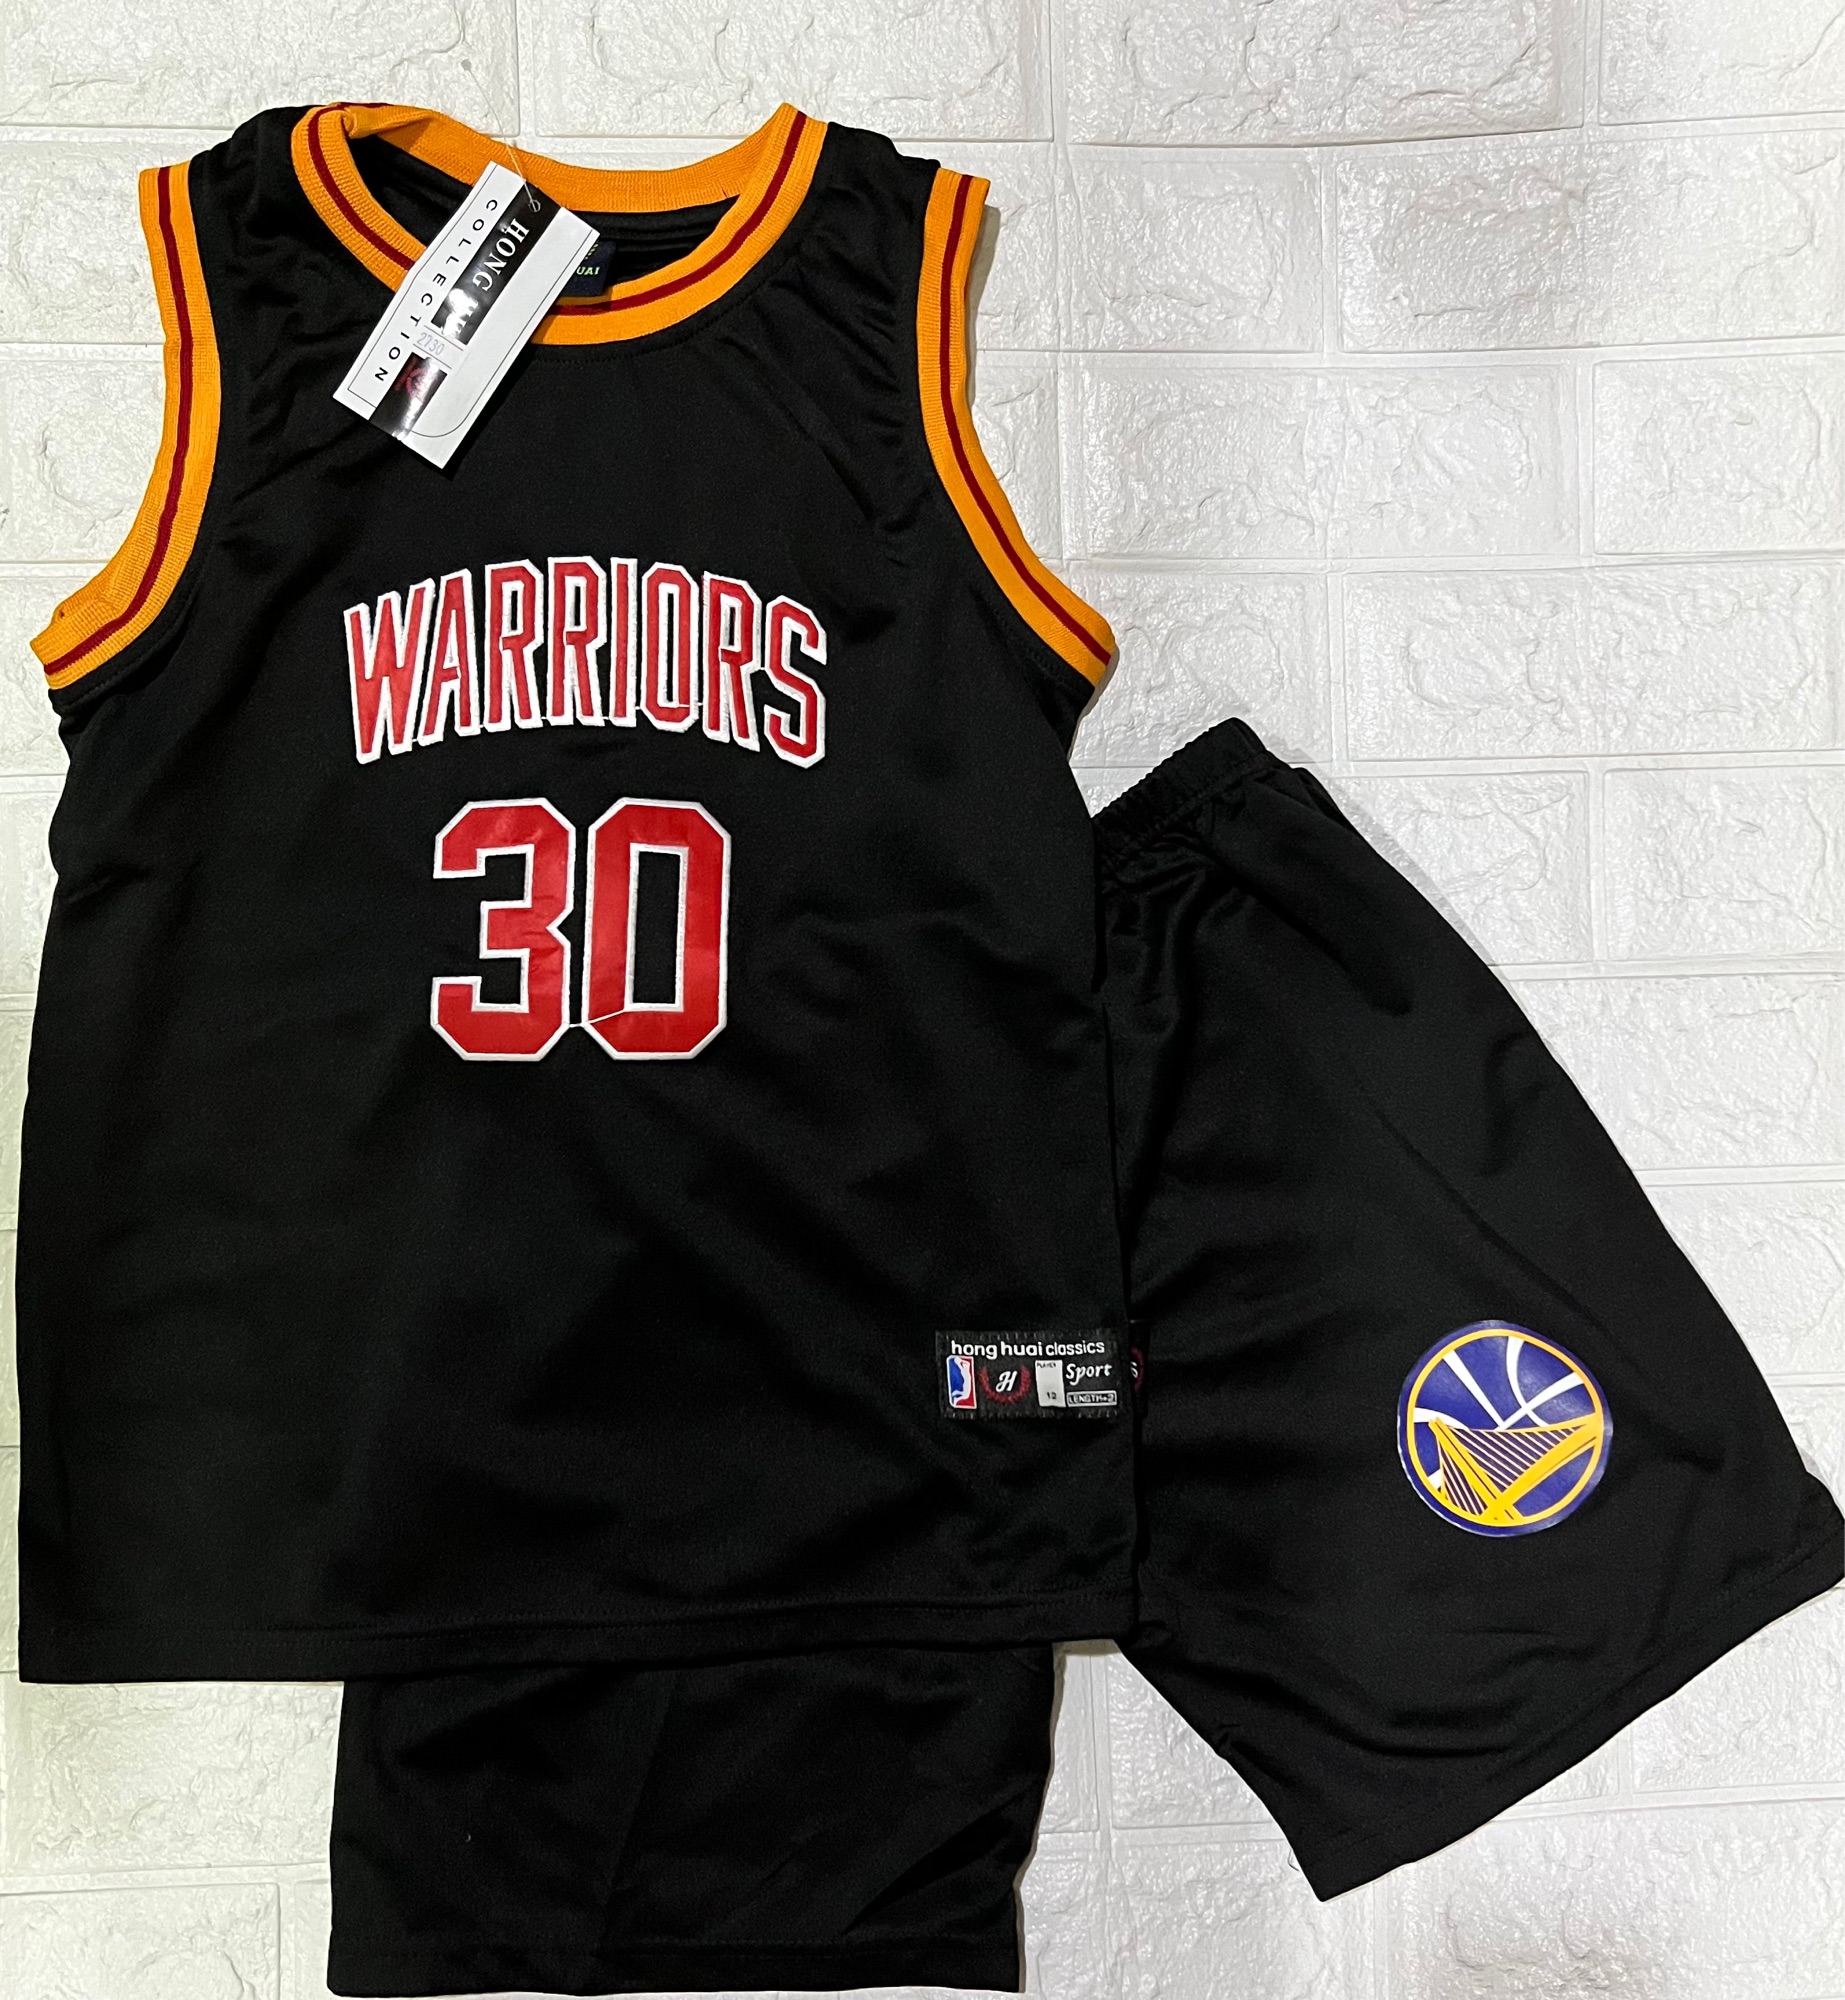 COD】 Kids Basketball Jersey Uniform Golden State Warriors Jersey